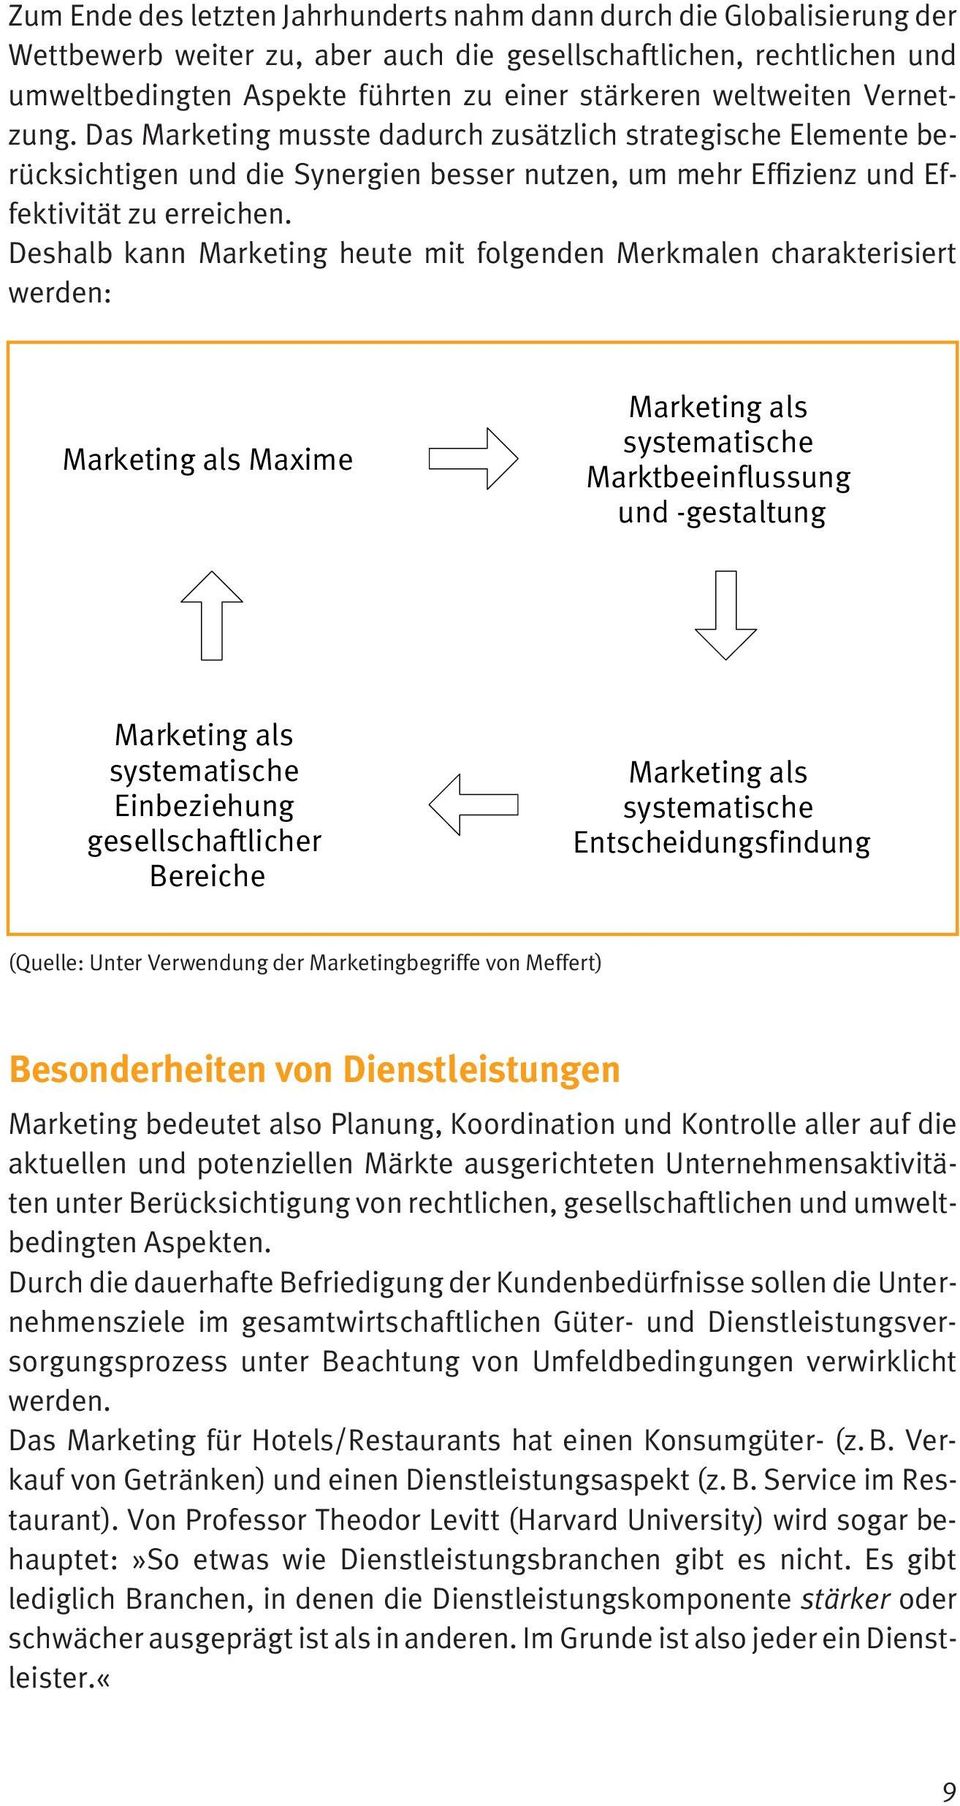 Deshalb kann Marketing heute mit folgenden Merkmalen charakterisiert werden: Marketing als Maxime Marketing als systematische Marktbeeinflussung und -gestaltung Marketing als systematische